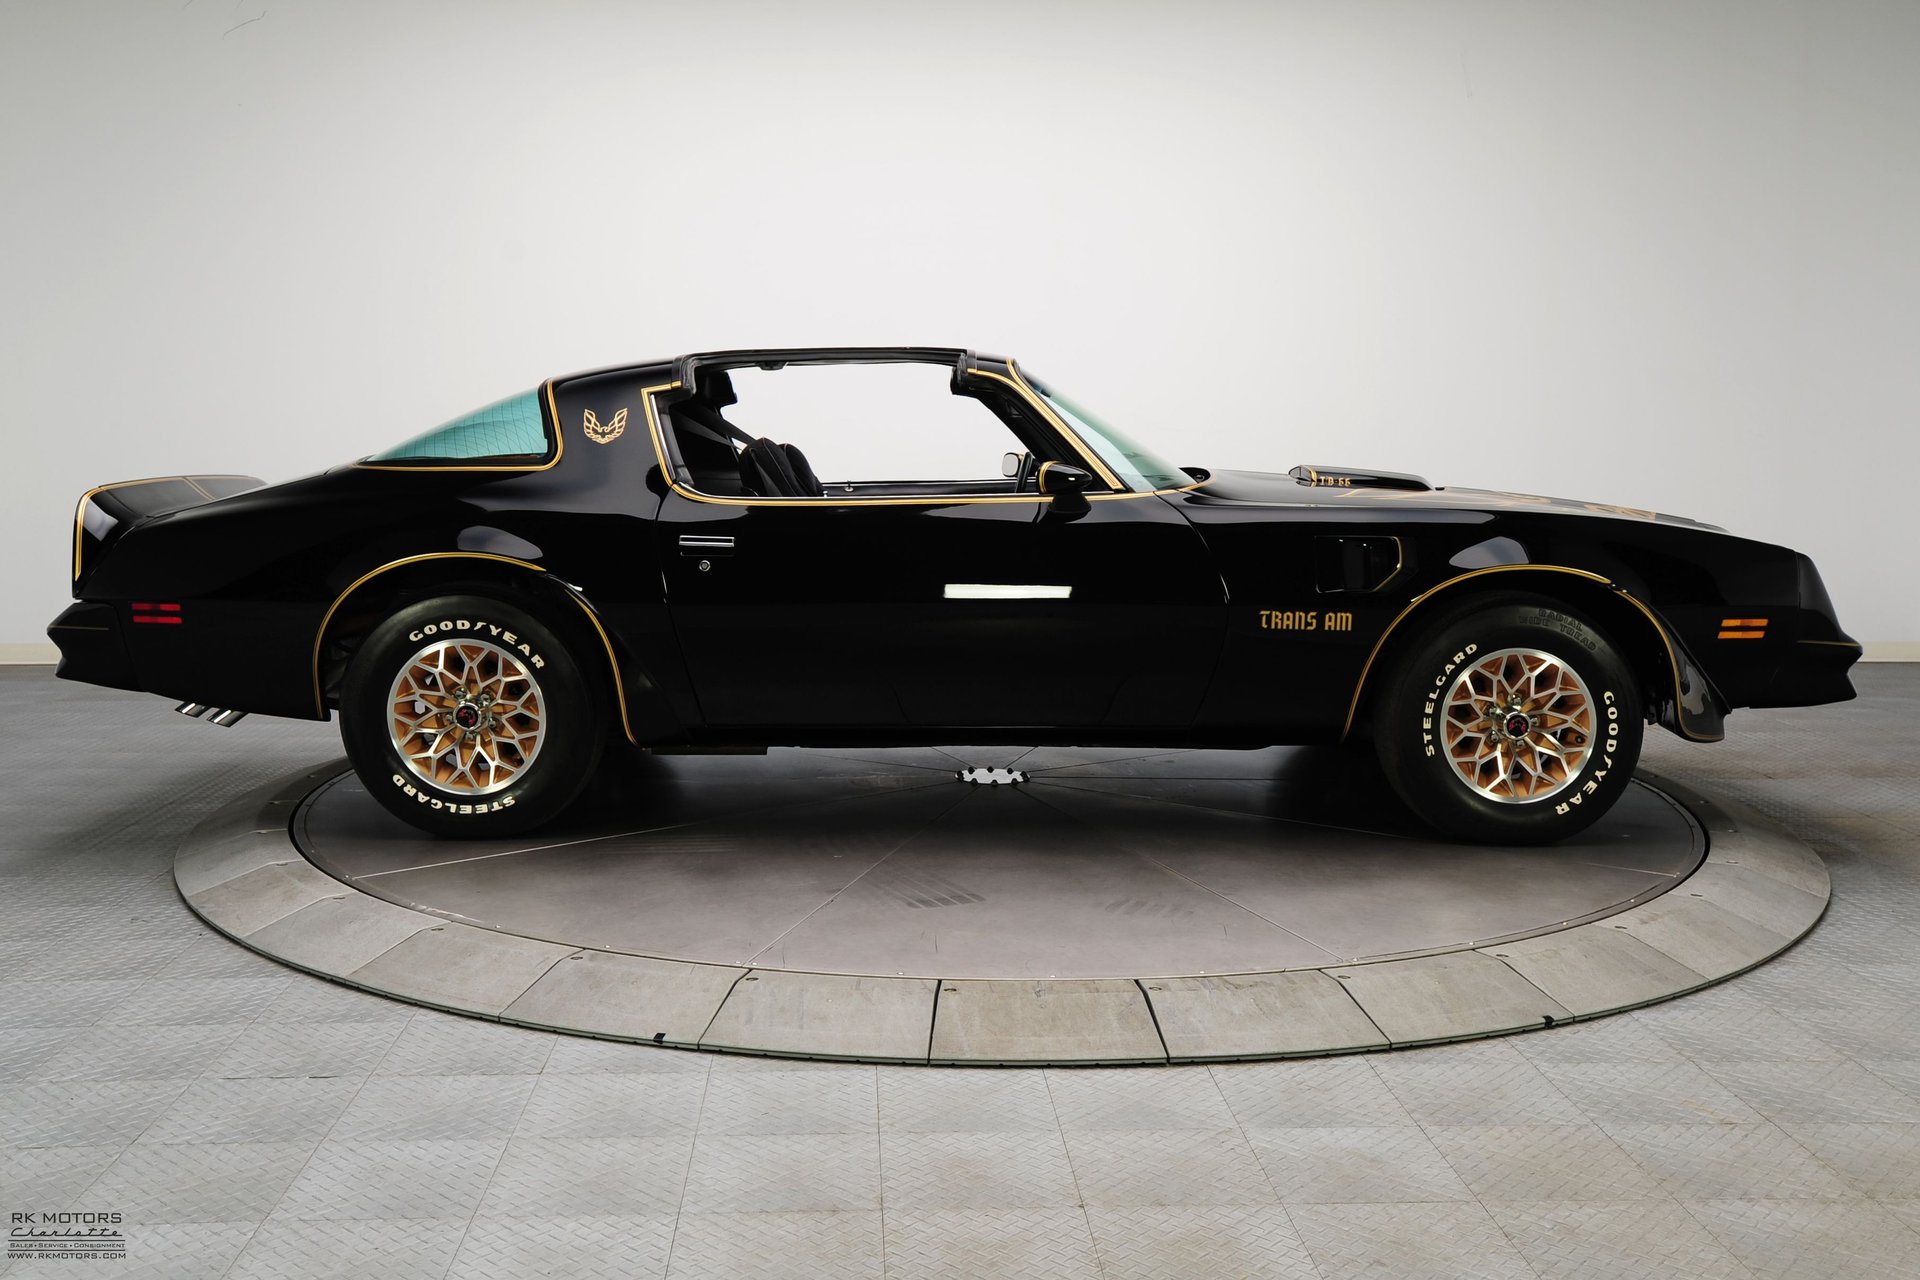 For Sale 1977 Pontiac Firebird